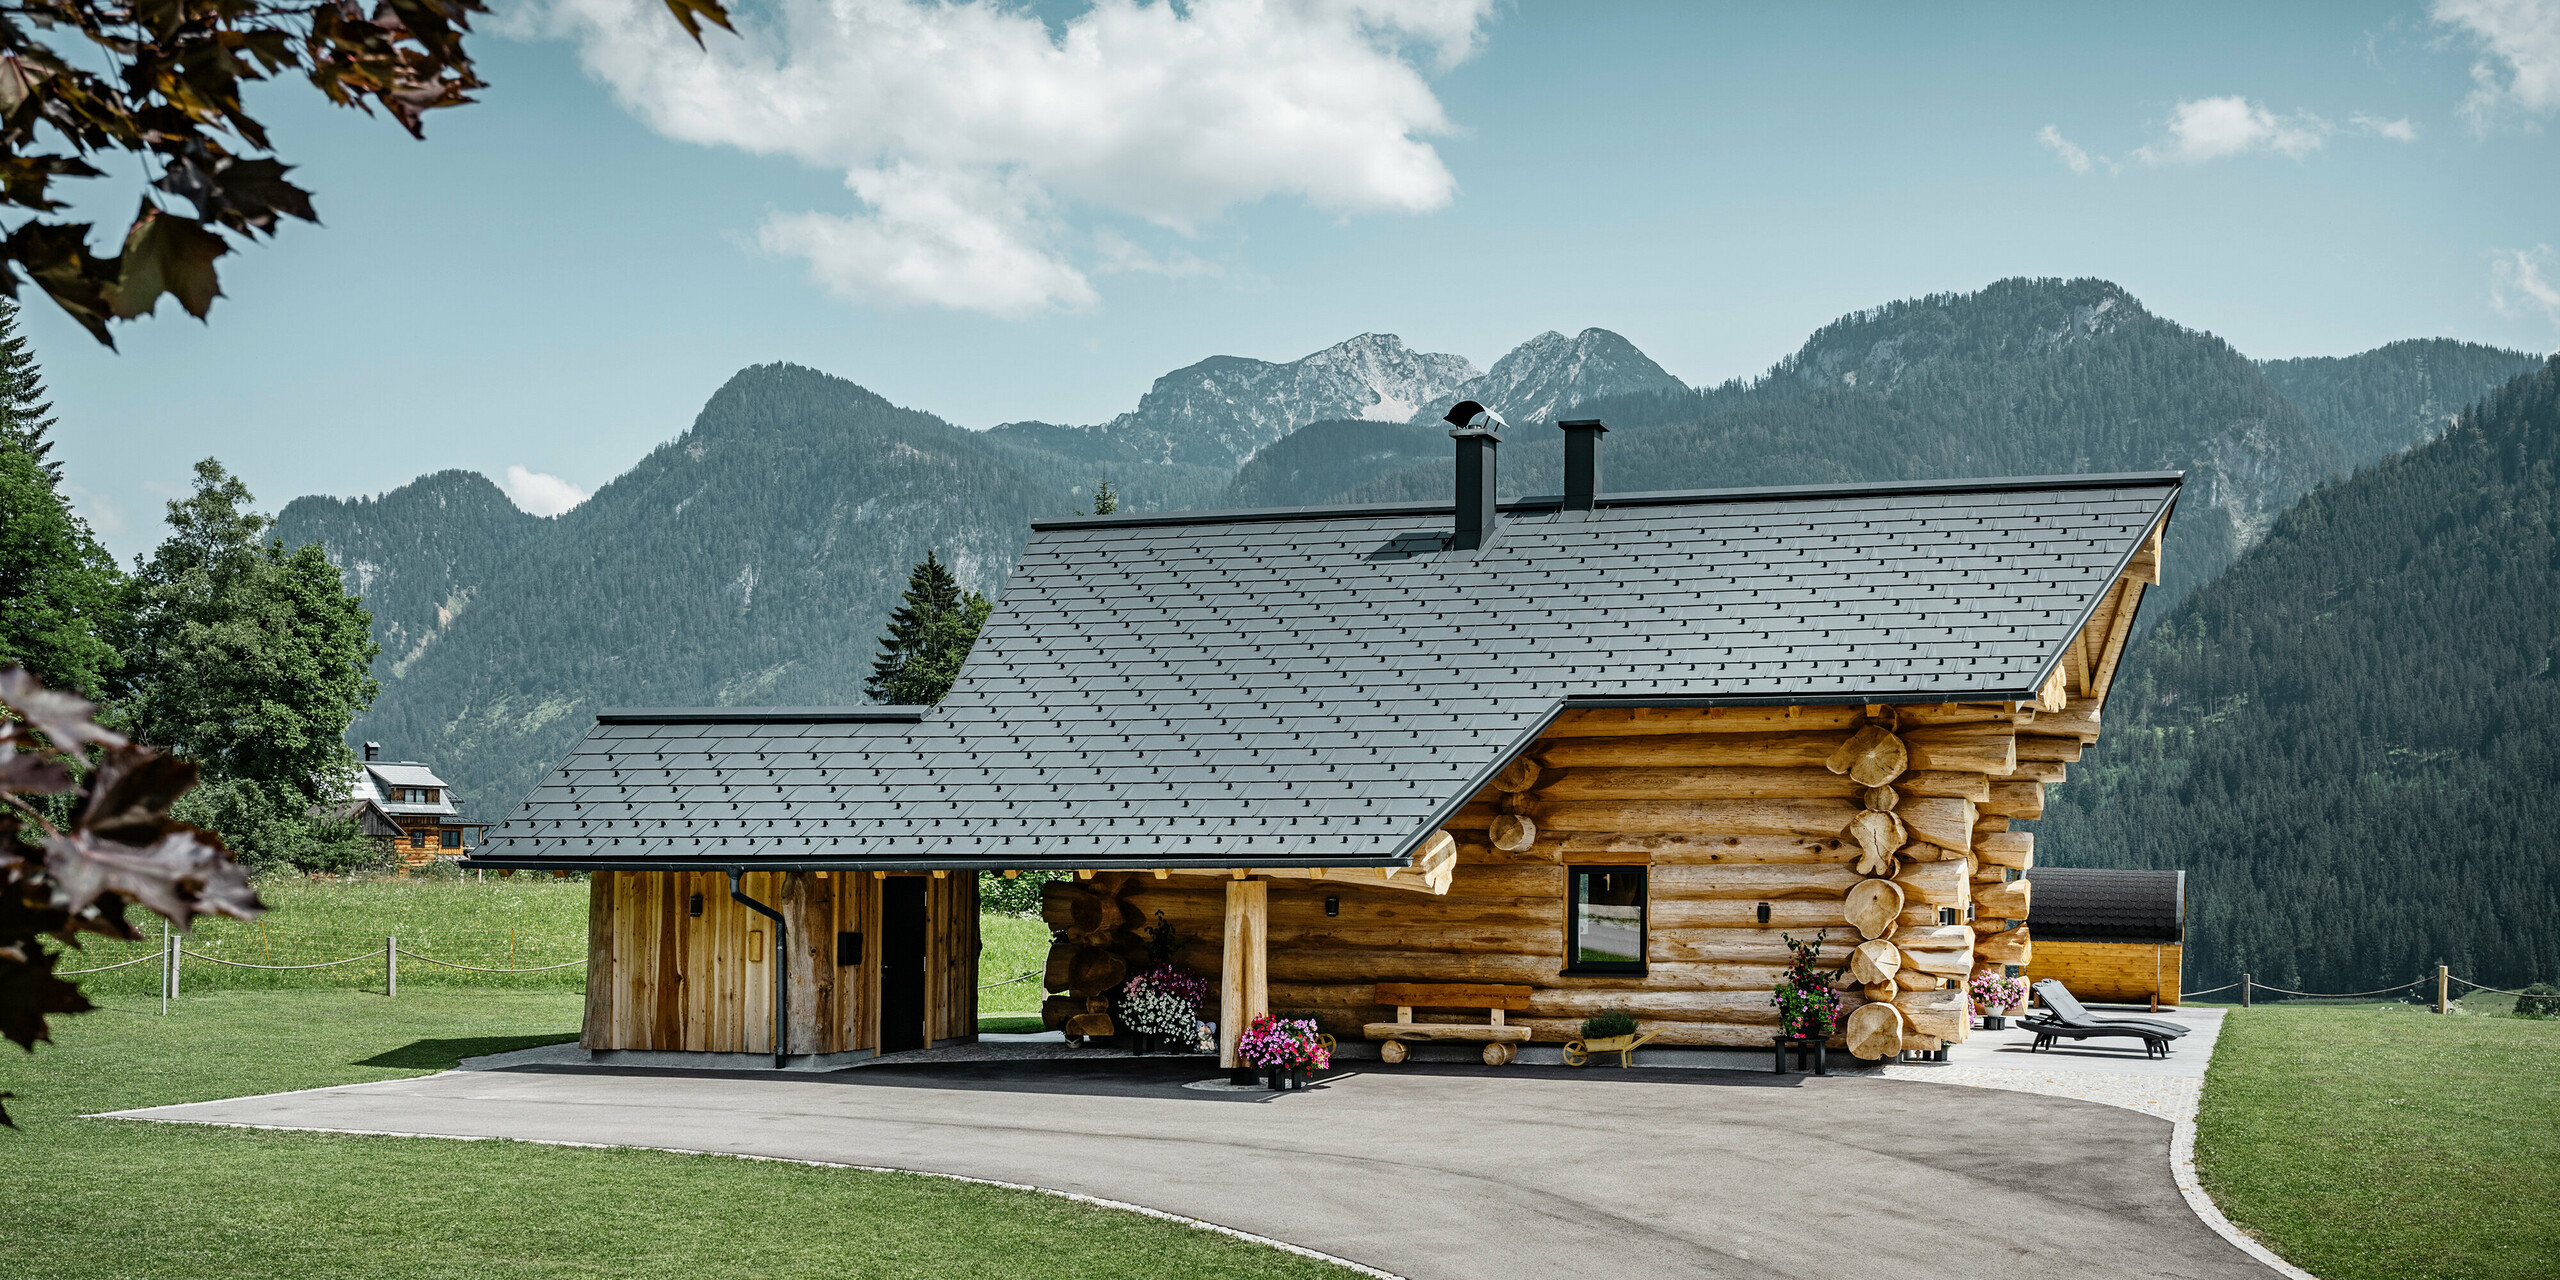 Brunarica v Gosau-u v Avstriji s strešnim sistemom PREFA v antracitni barvi. Preizkušene strešne plošče R.16 ustvarjajo privlačen kontrast naravnemu lesu brunarice. V ozadju je veličastna gorska panorama, ki poudarja mirno in slikovito lokacijo hiše. Podrobna fotografija prikazuje simbiozo tradicionalne avstrijske arhitekture in sodobne strešne tehnologije ter prikazuje robustno in estetsko kakovost aluminijastih izdelkov PREFA.